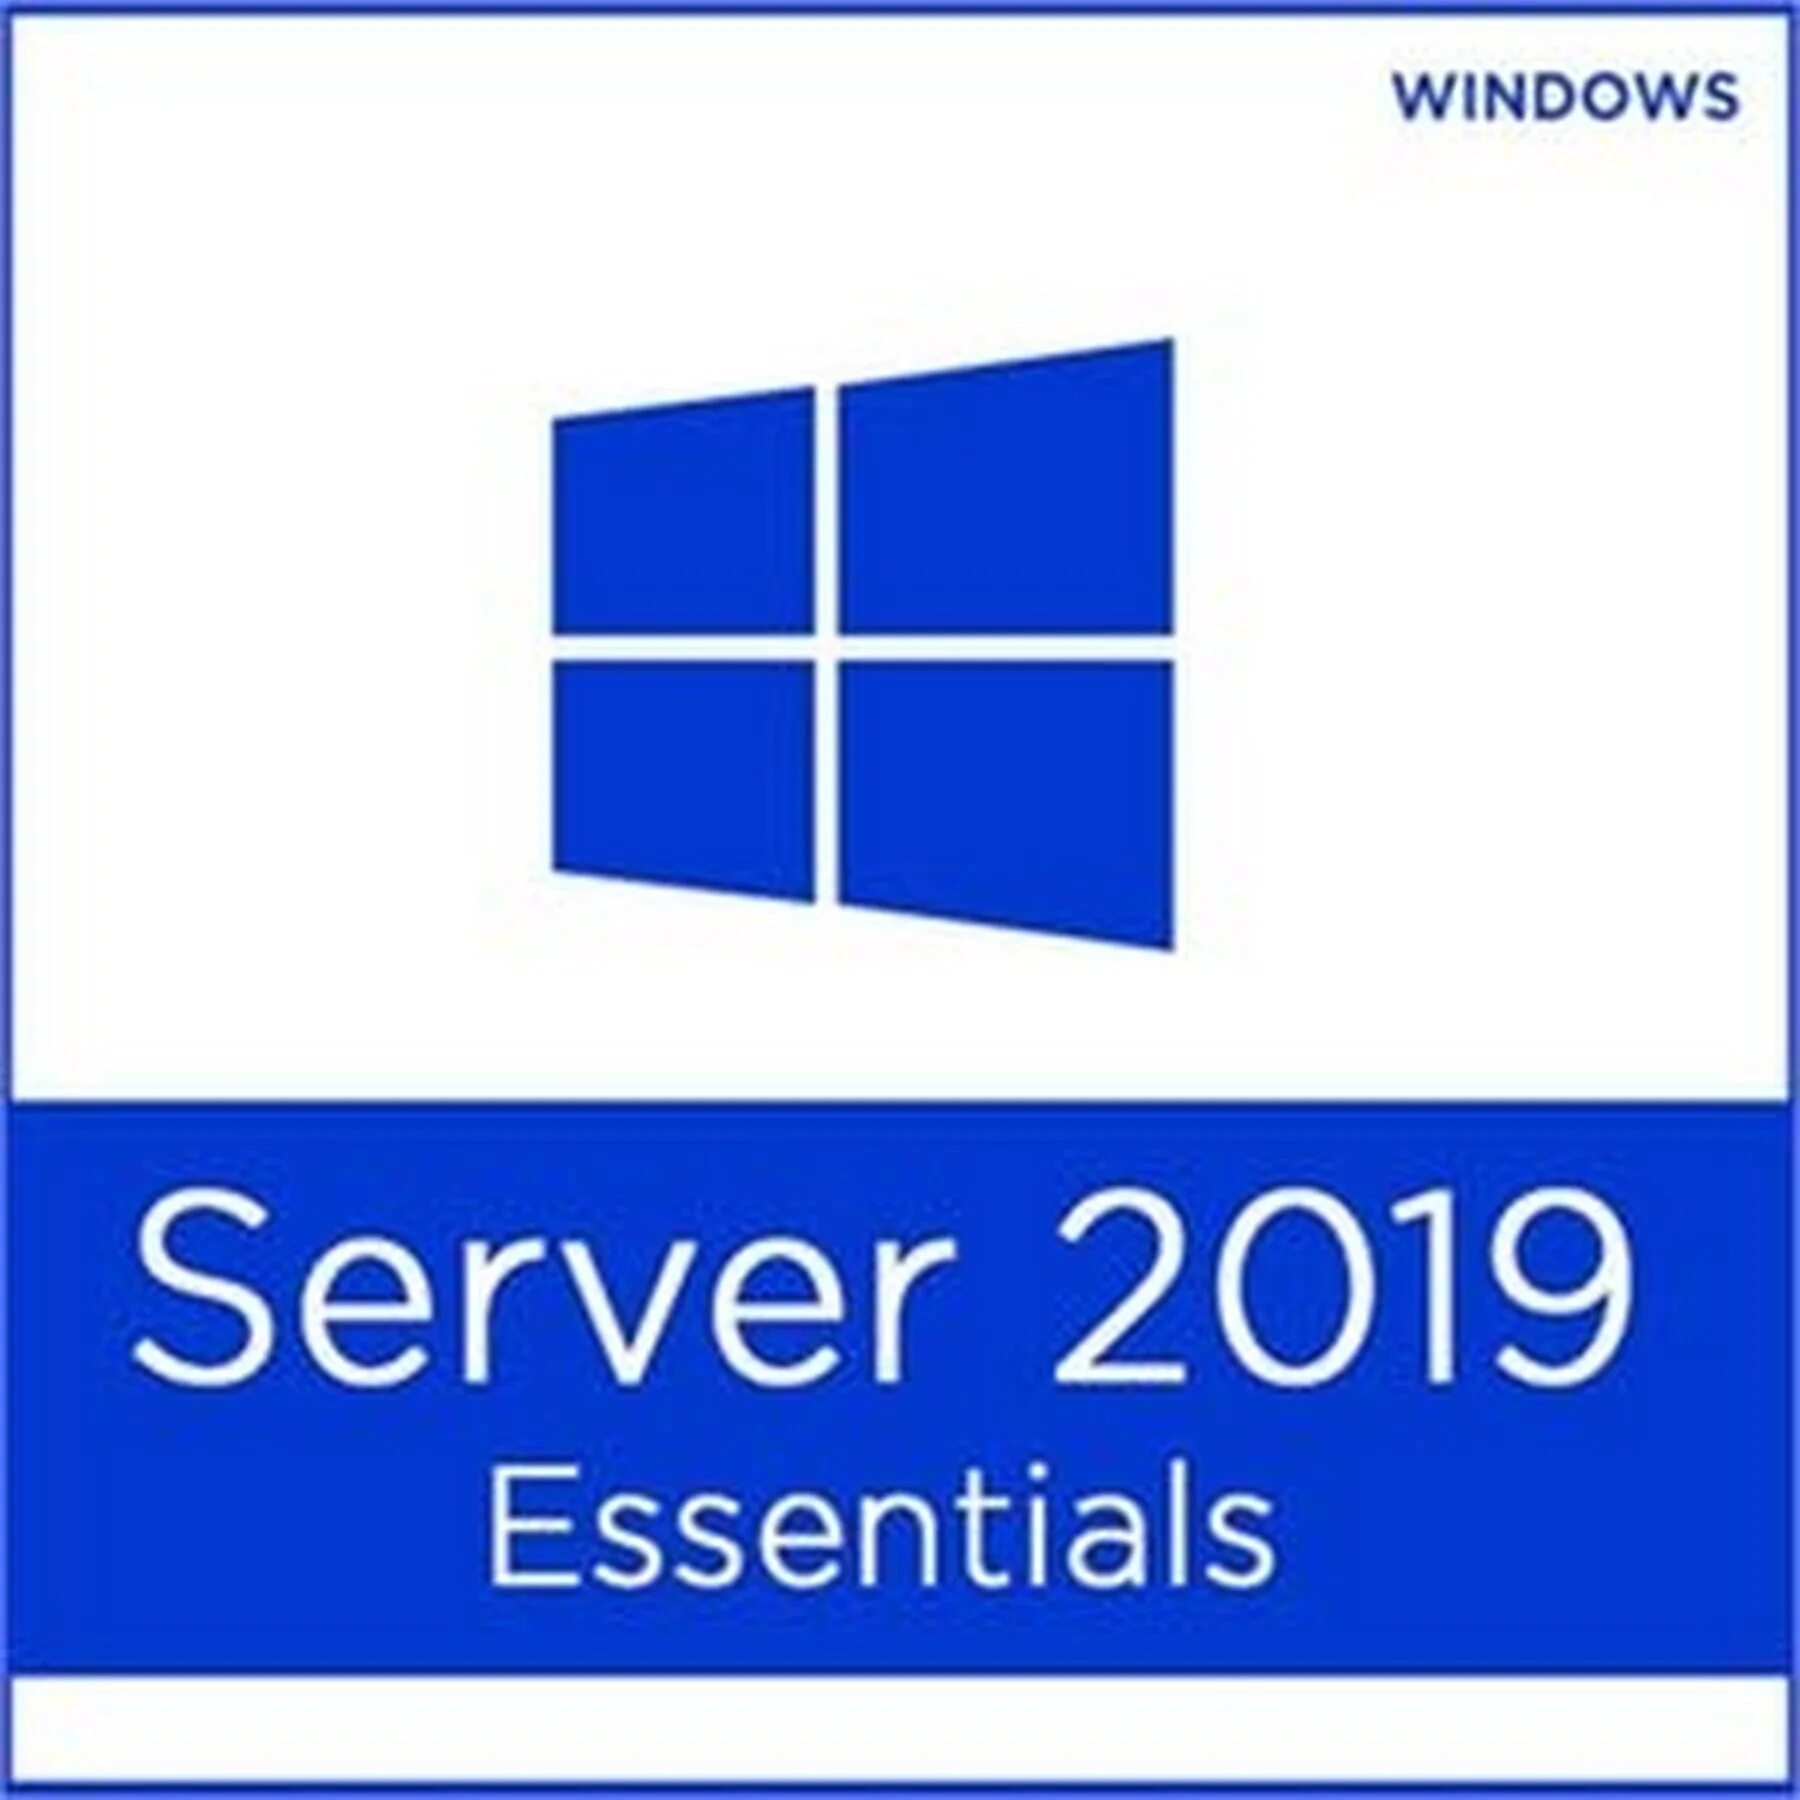 Server Essentials 2019. Microsoft Windows Server 2019 Standard. Windows Server 2019 Essentials. Windows Server 2019 Box.